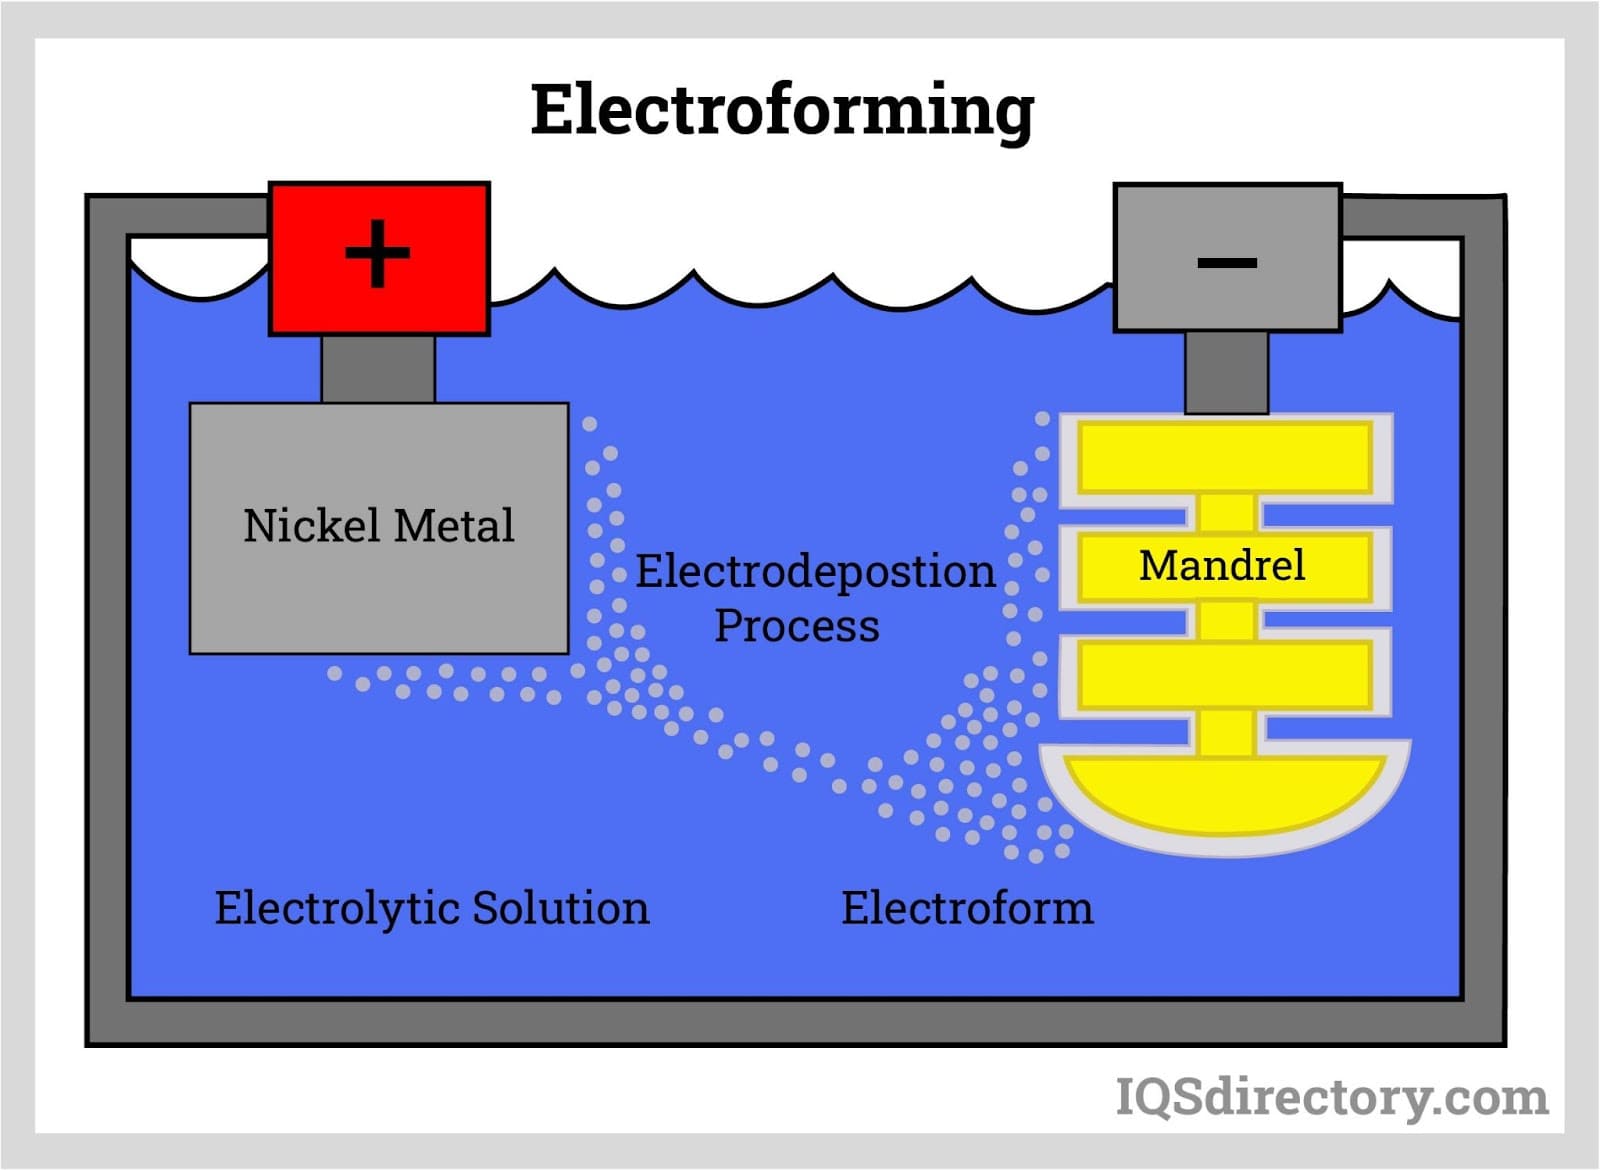 Electroforming